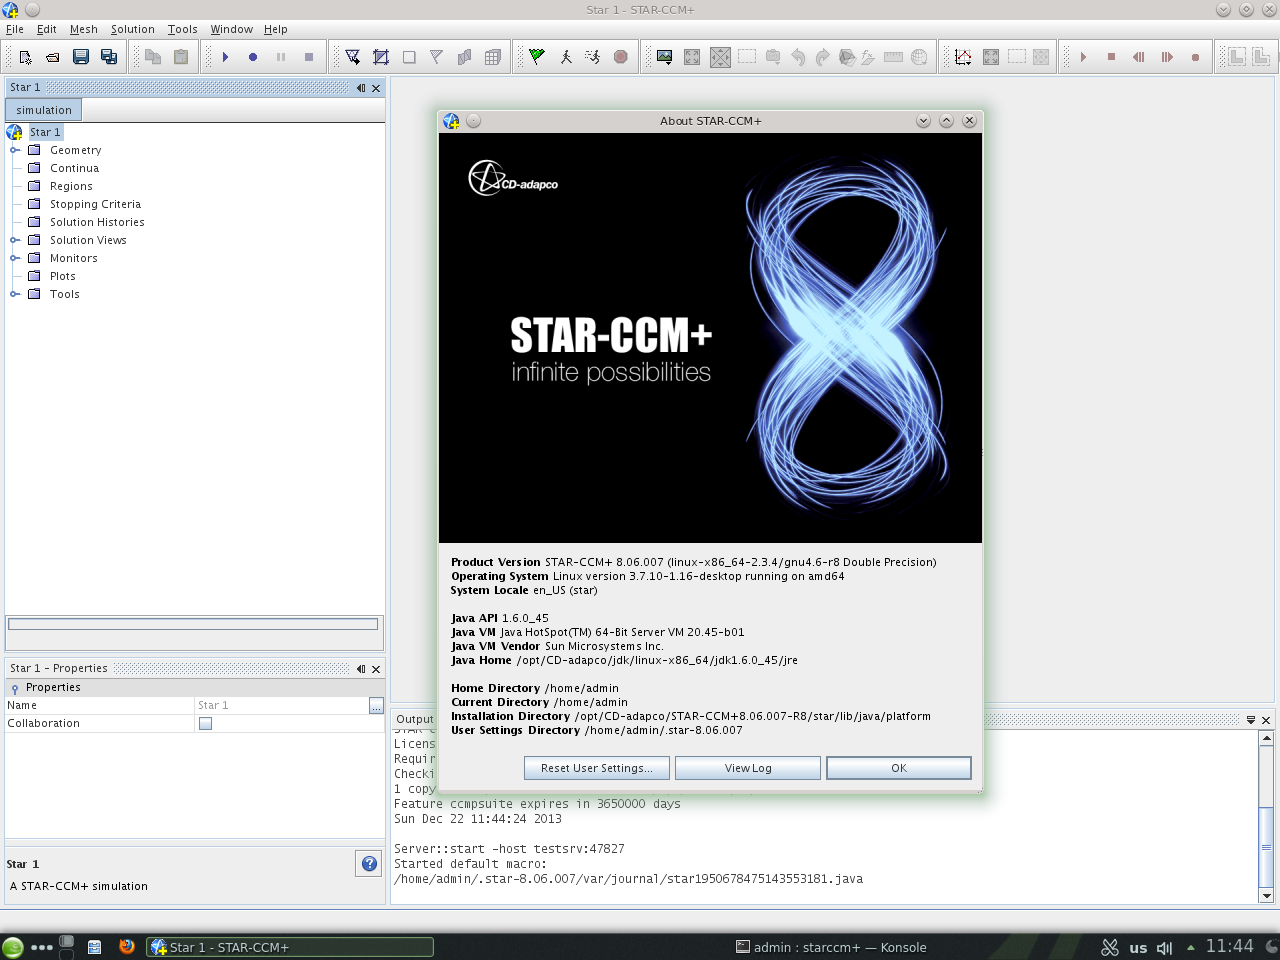 CD-Adapco Star CCM+ 8.06.007-R8 (double precision)